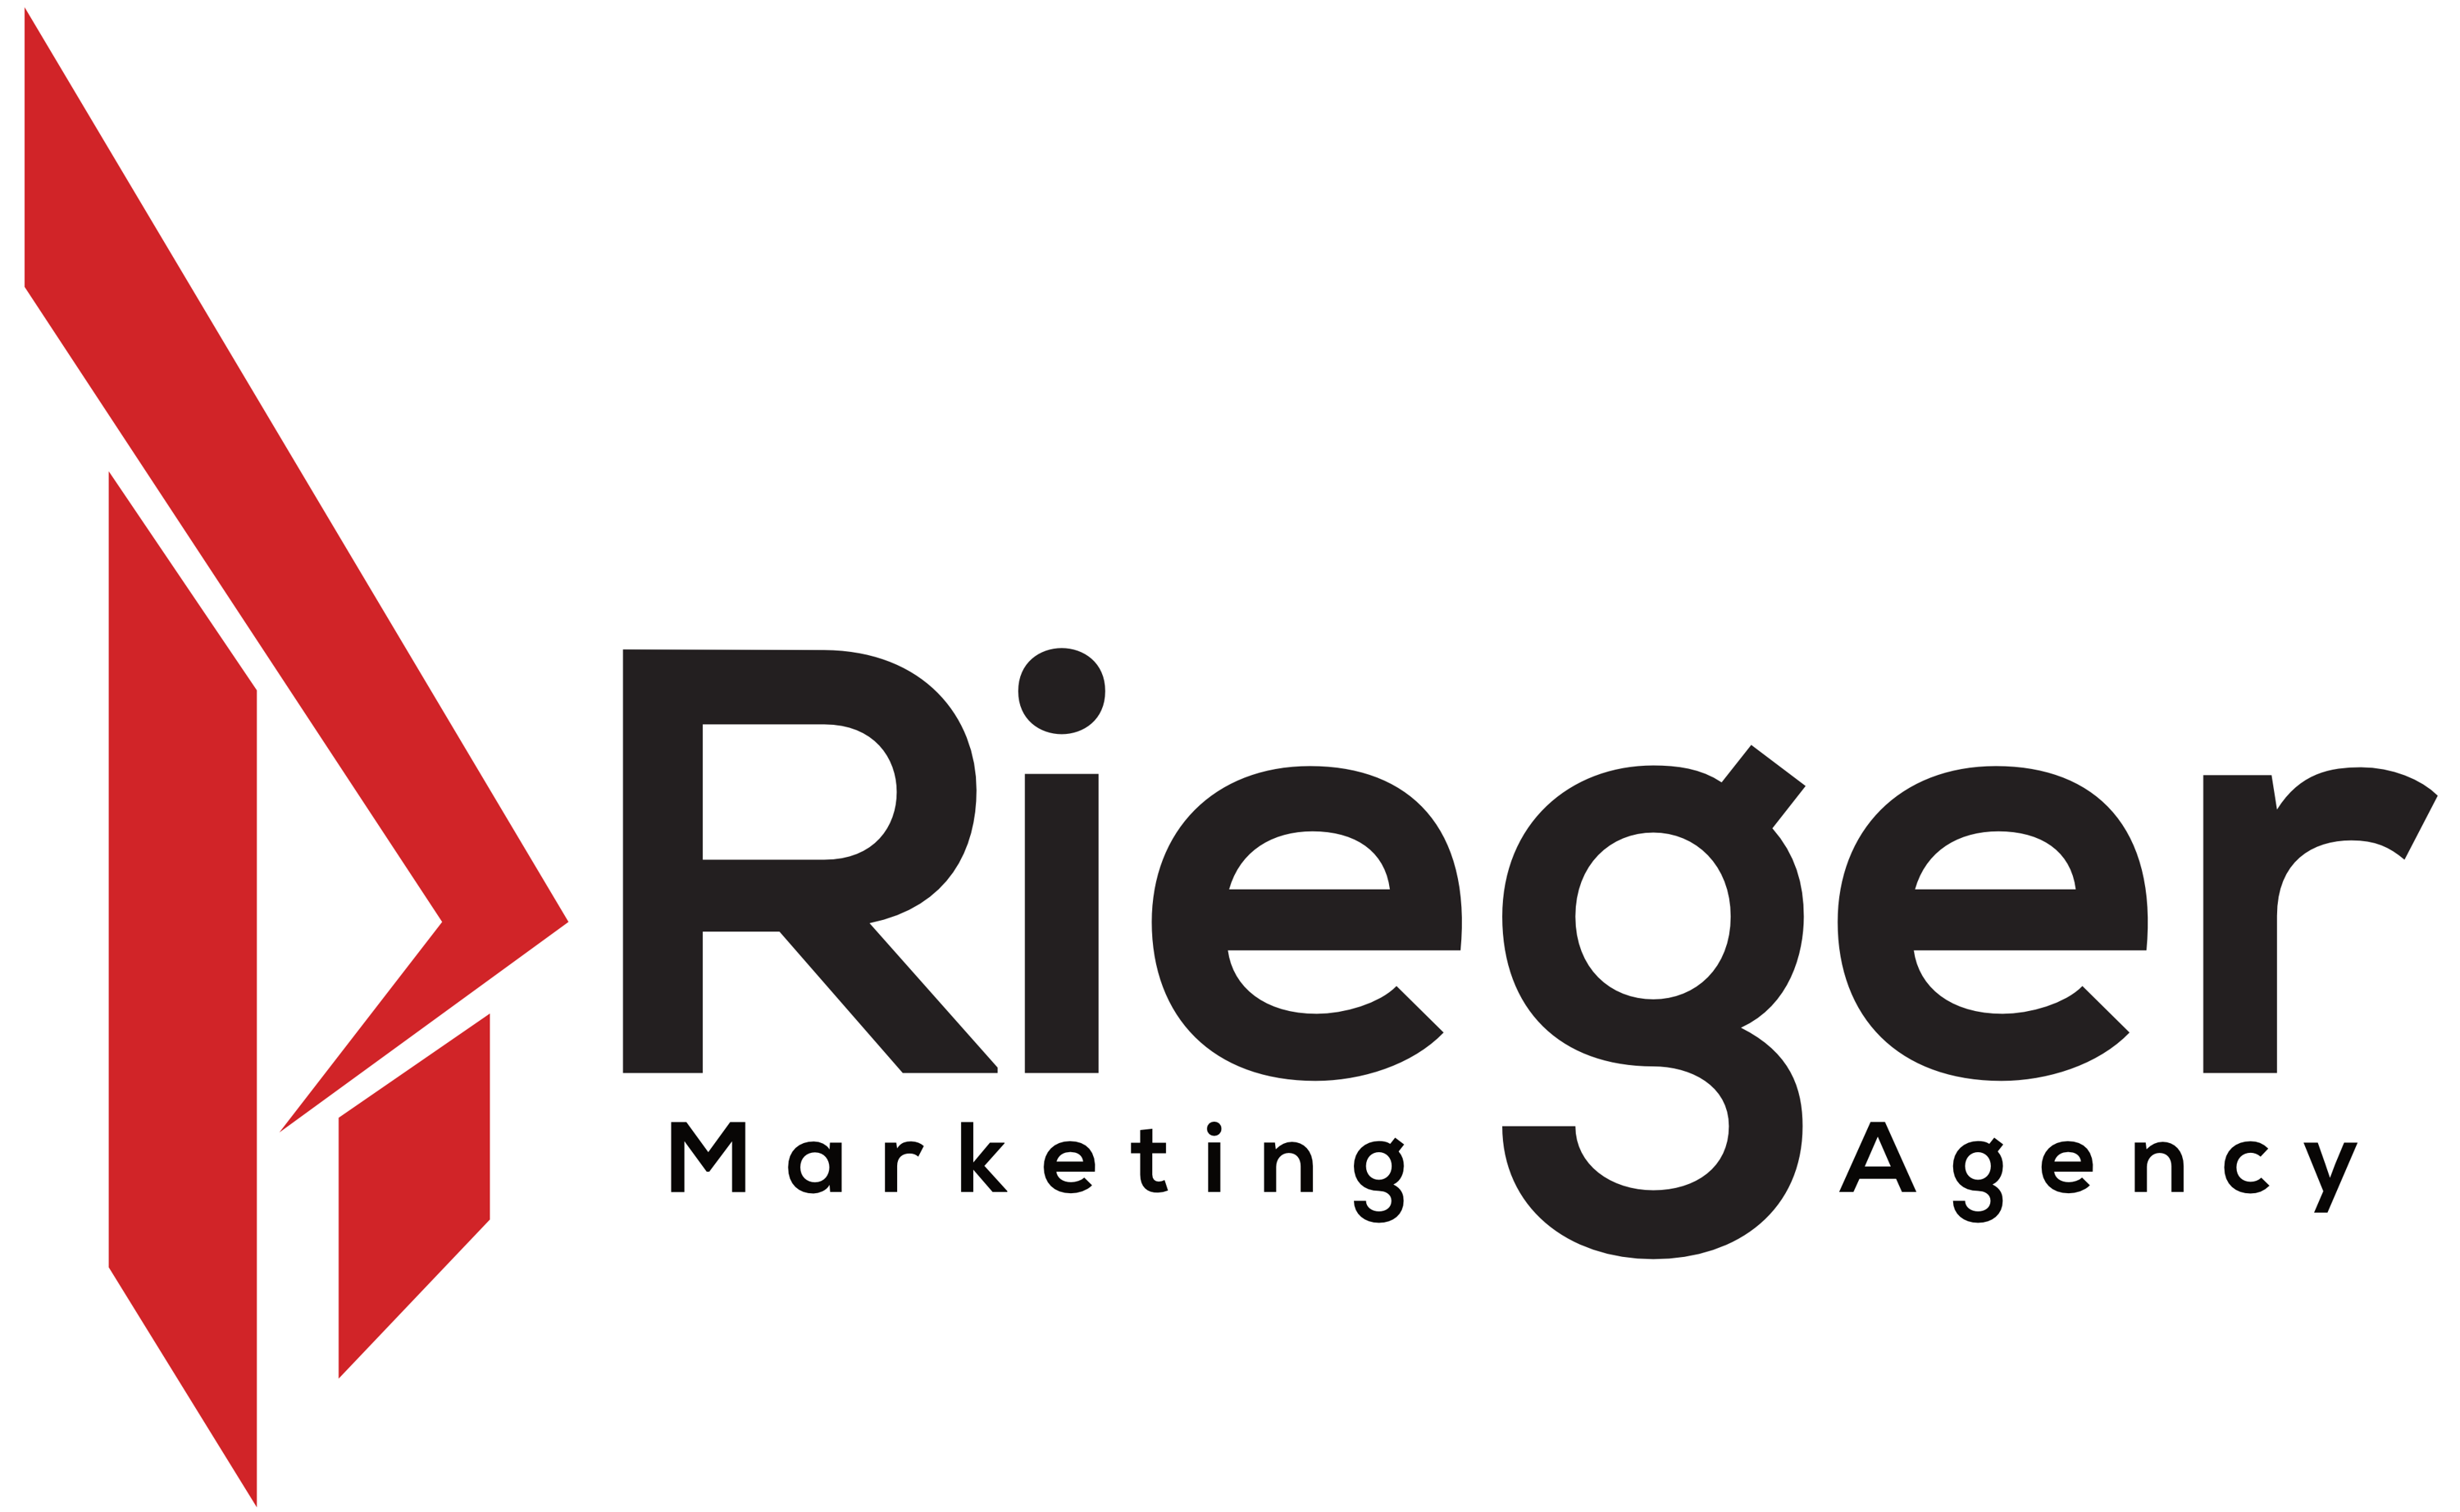 Rieger Marketing Agency Logo Design Professionell Erstellen Lassen